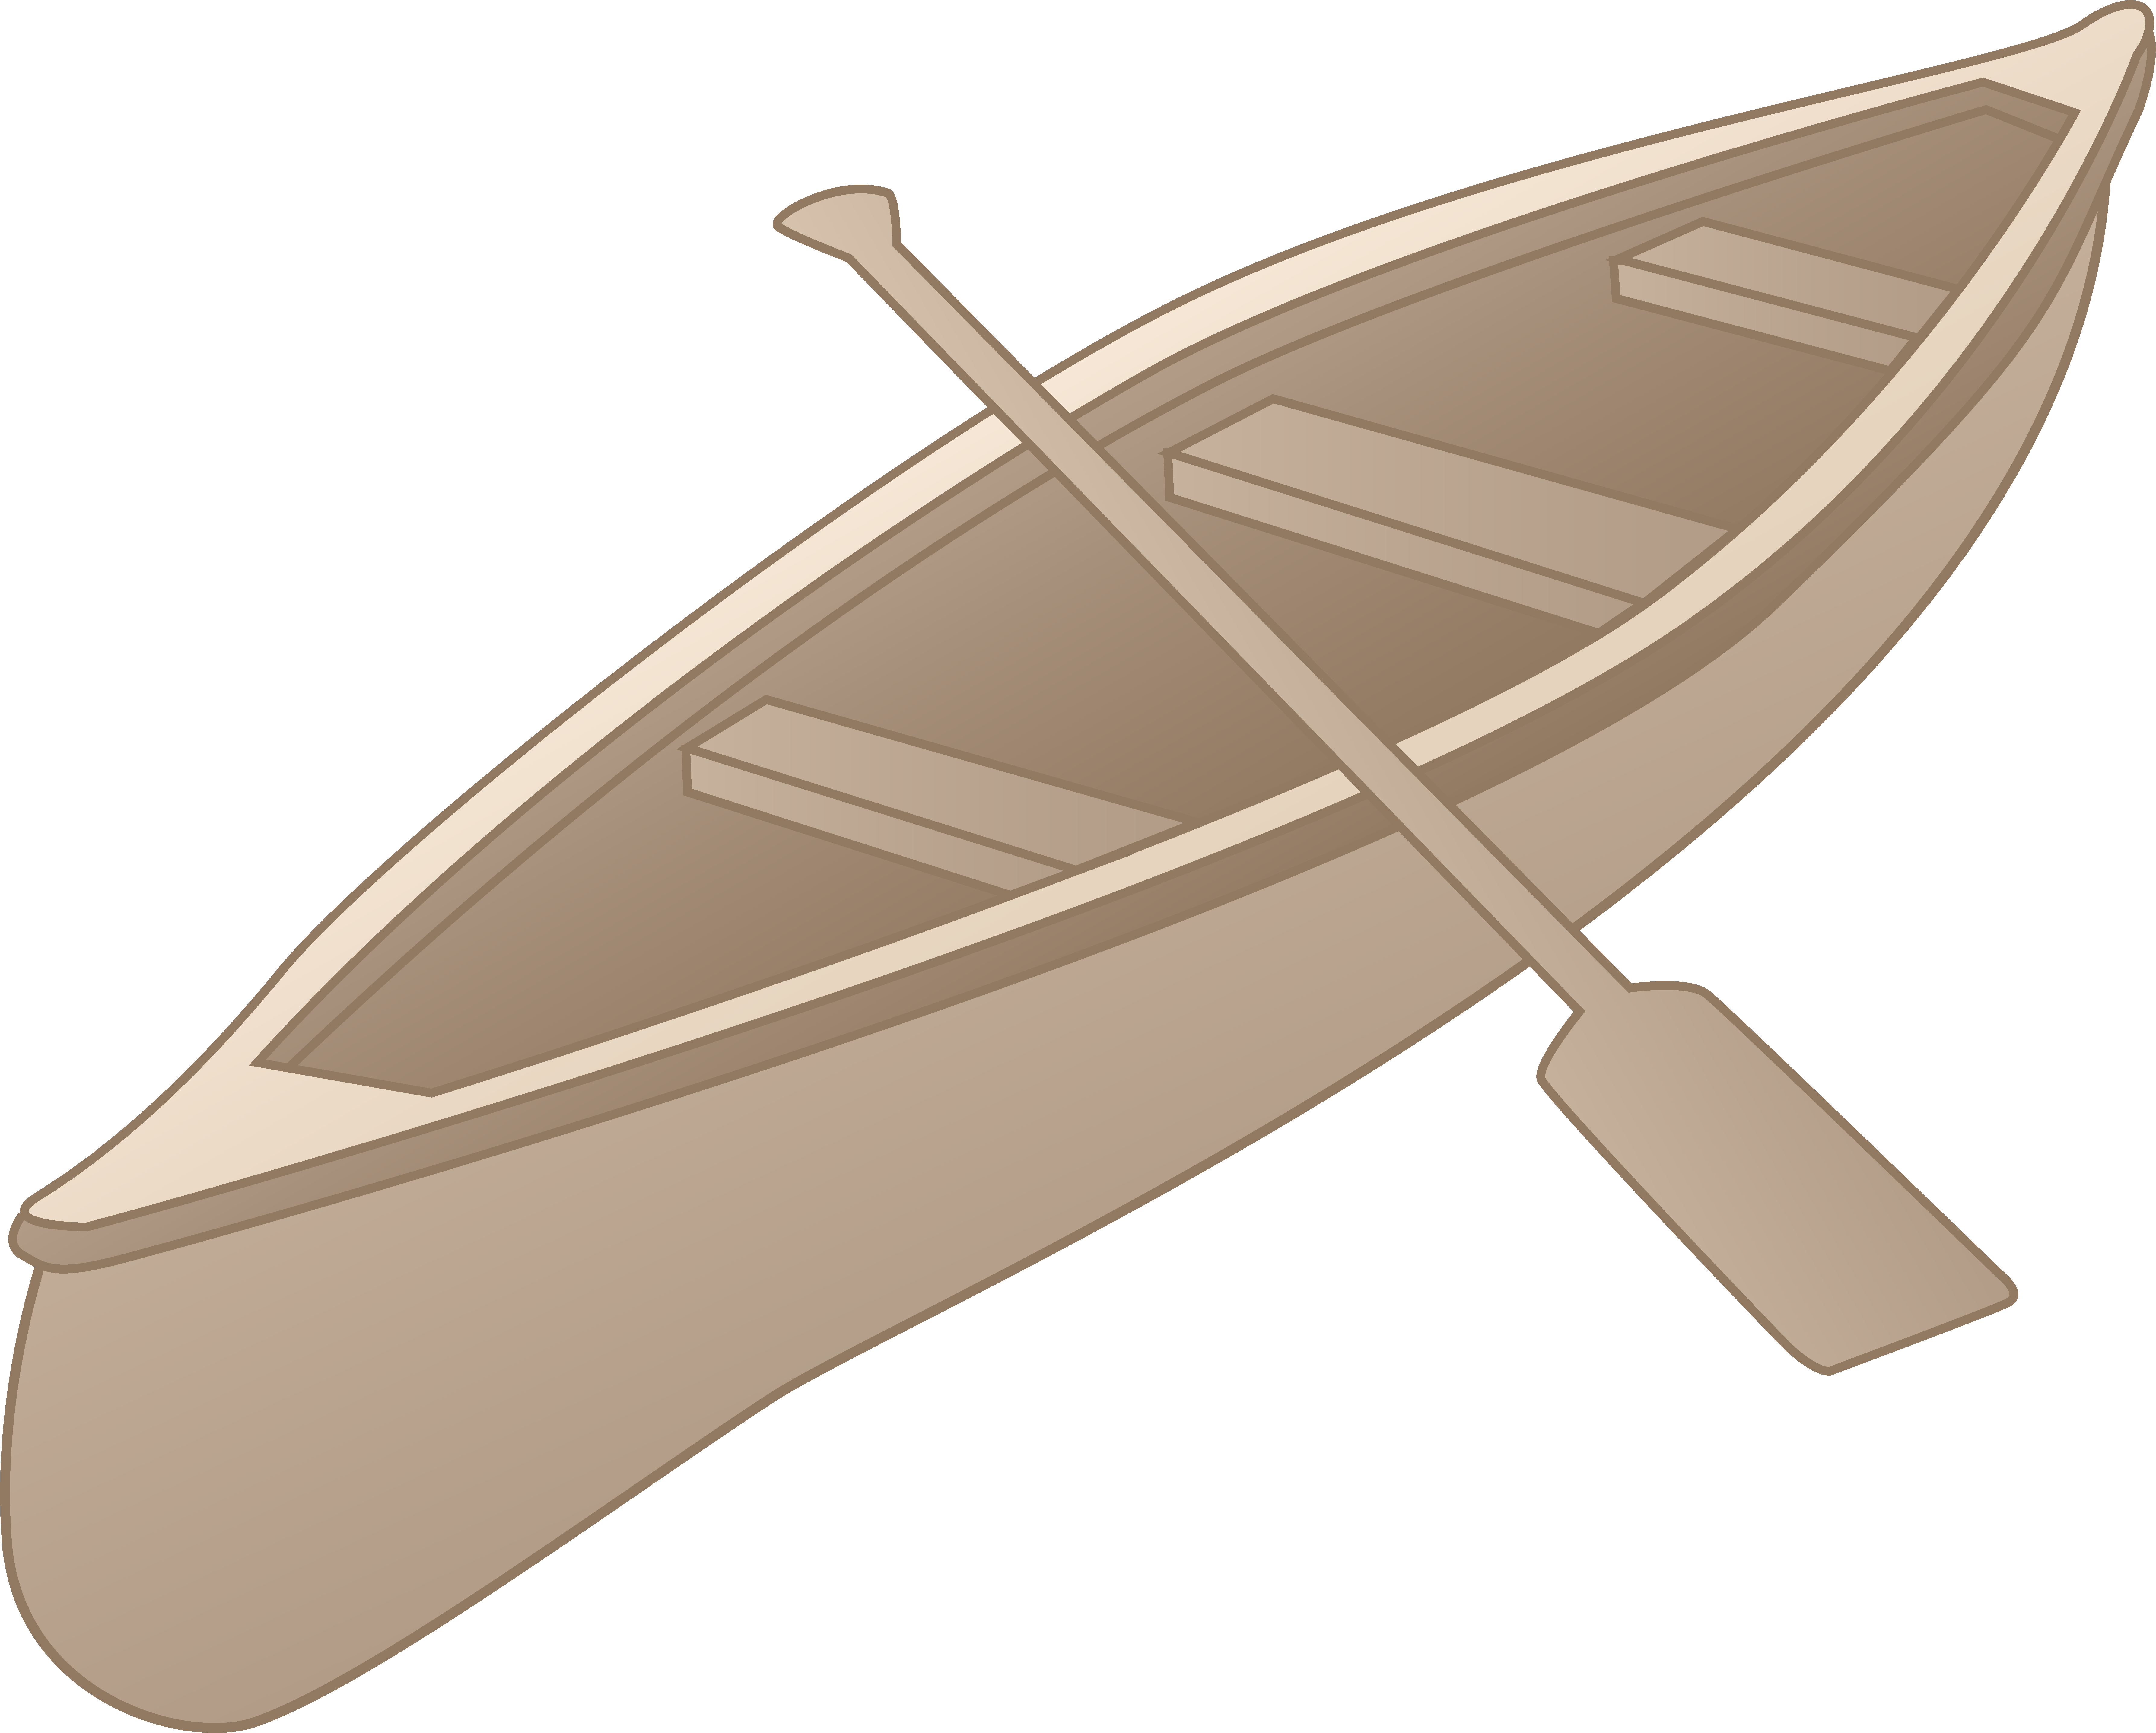 Canoe clipart.